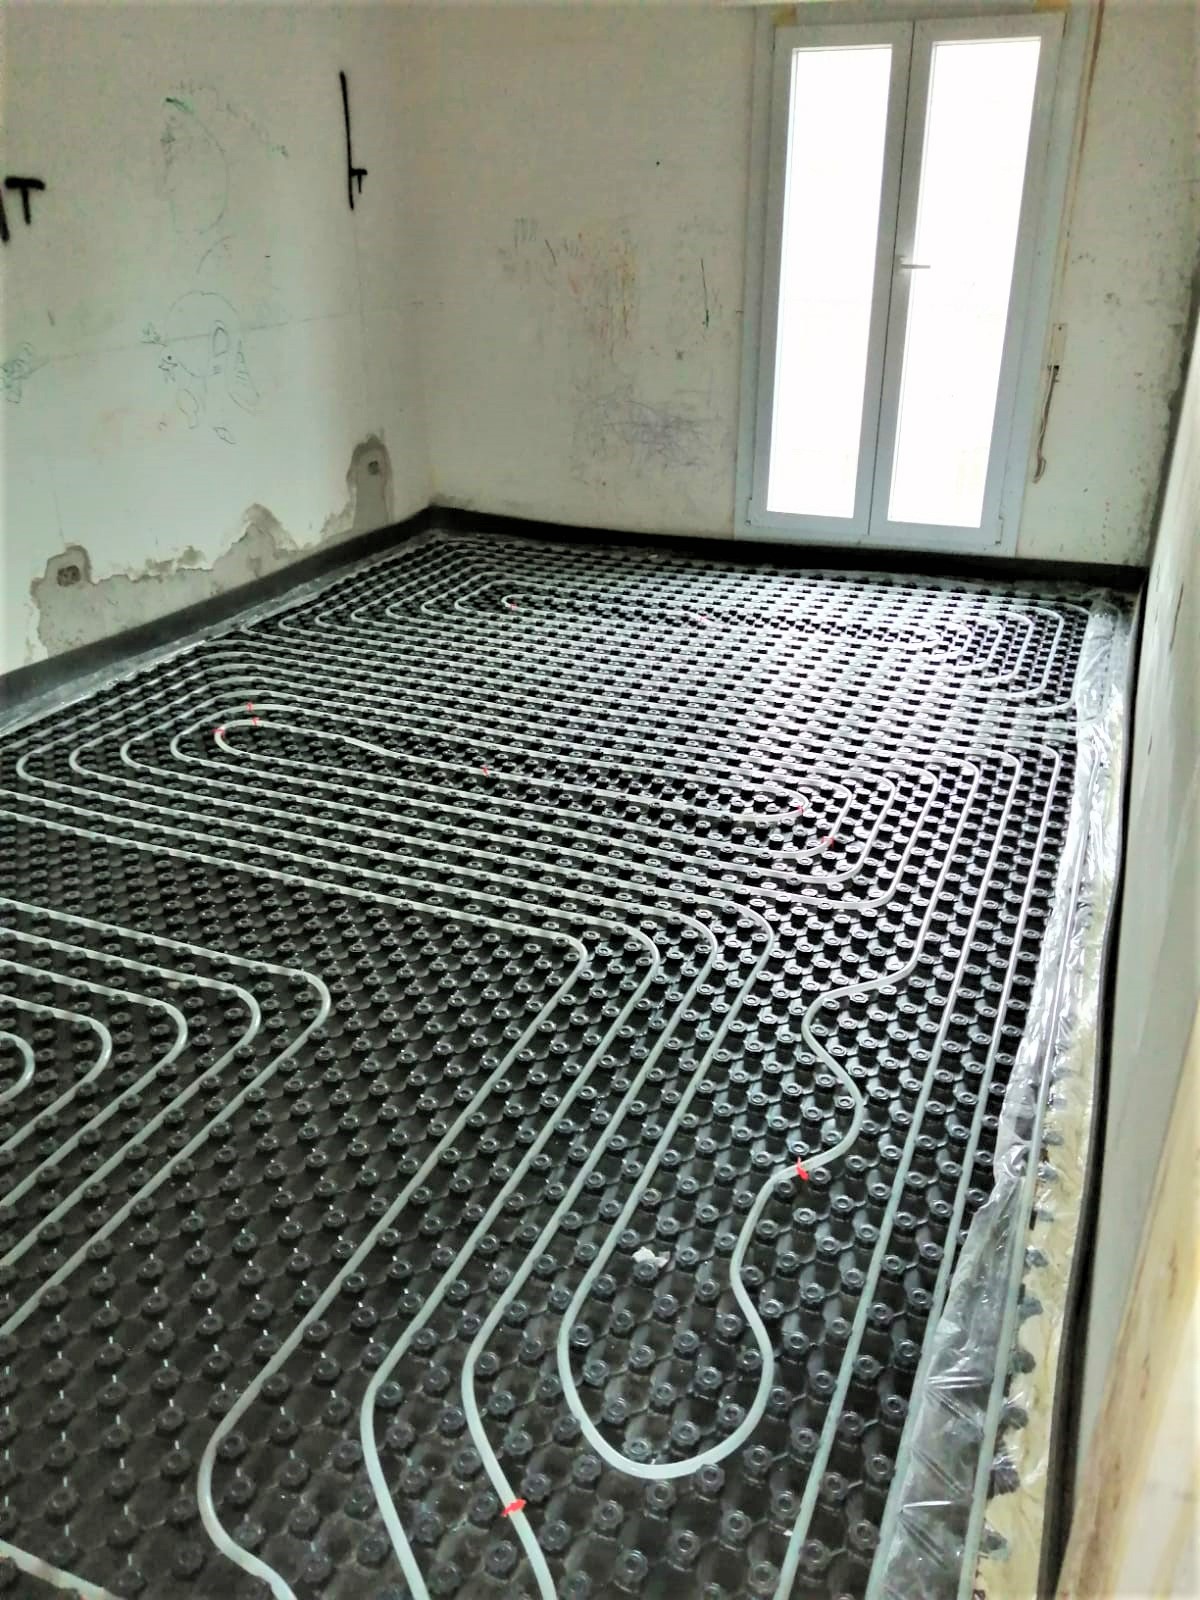 pavimento riscaldante-domotica-impianto distribuzione-ventilconvettore-plenum-riscaldamento